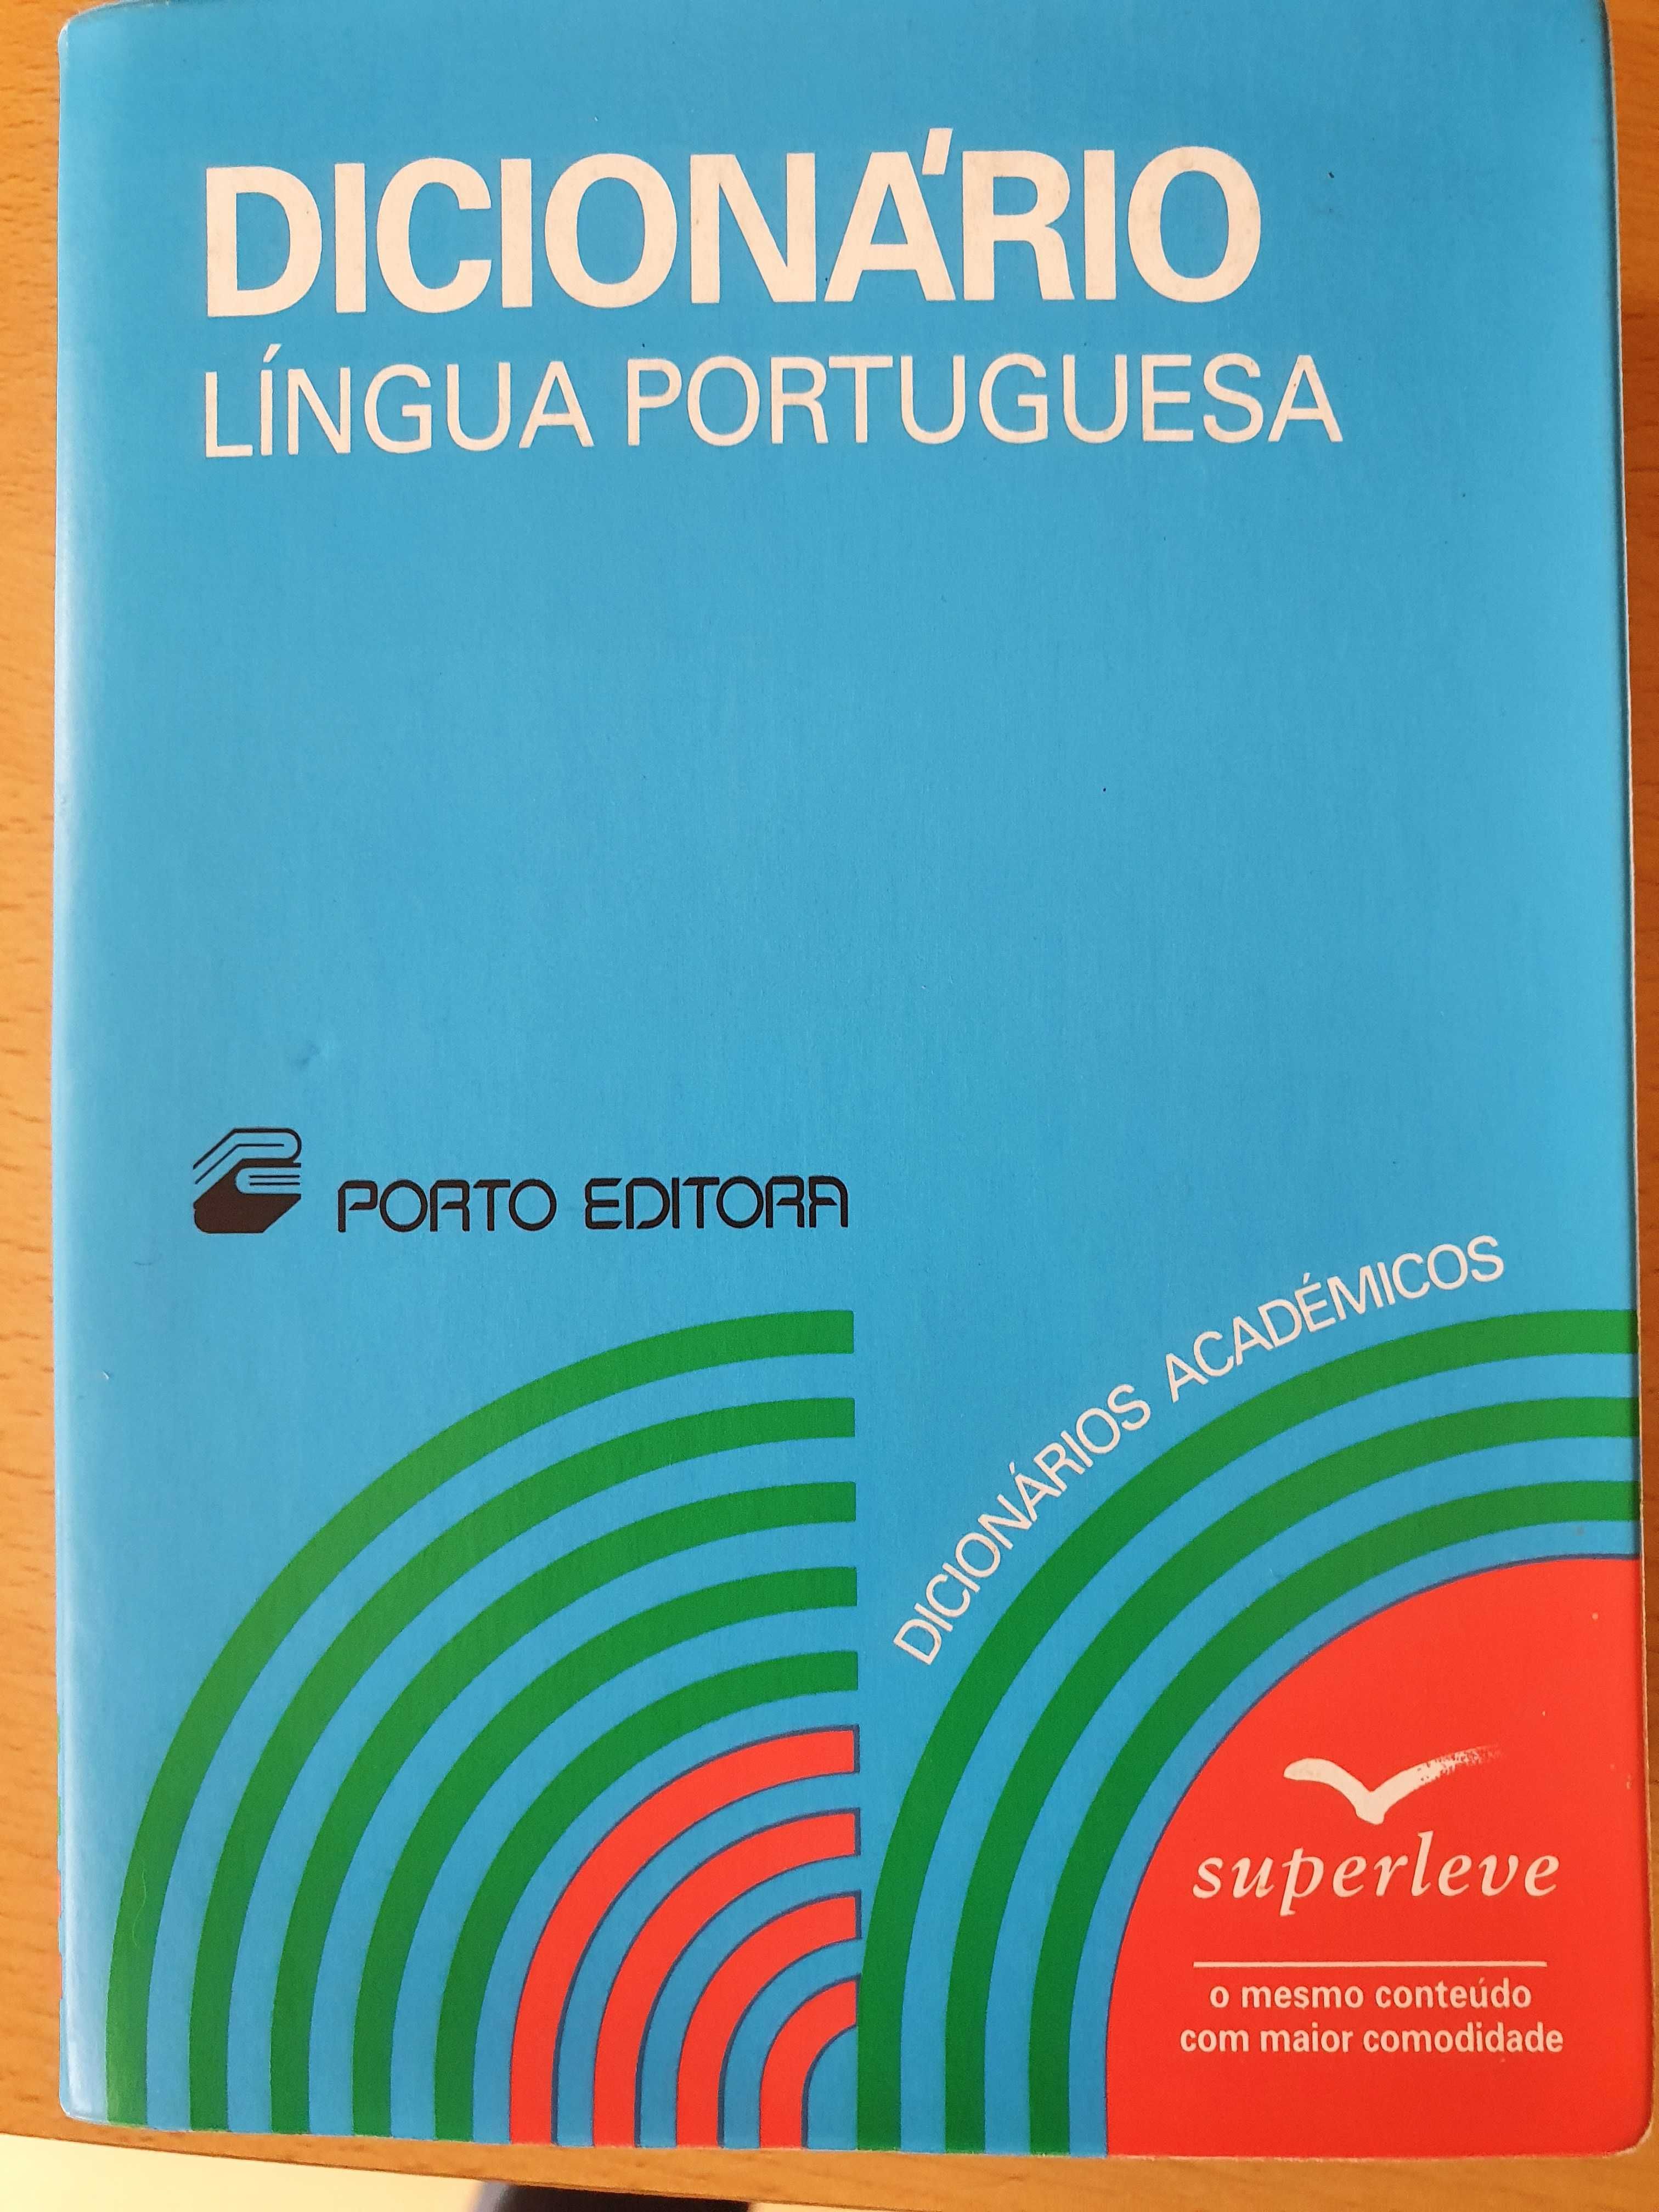 Dicionário Lingua Portuguesa e Dicionário Português-Inglês